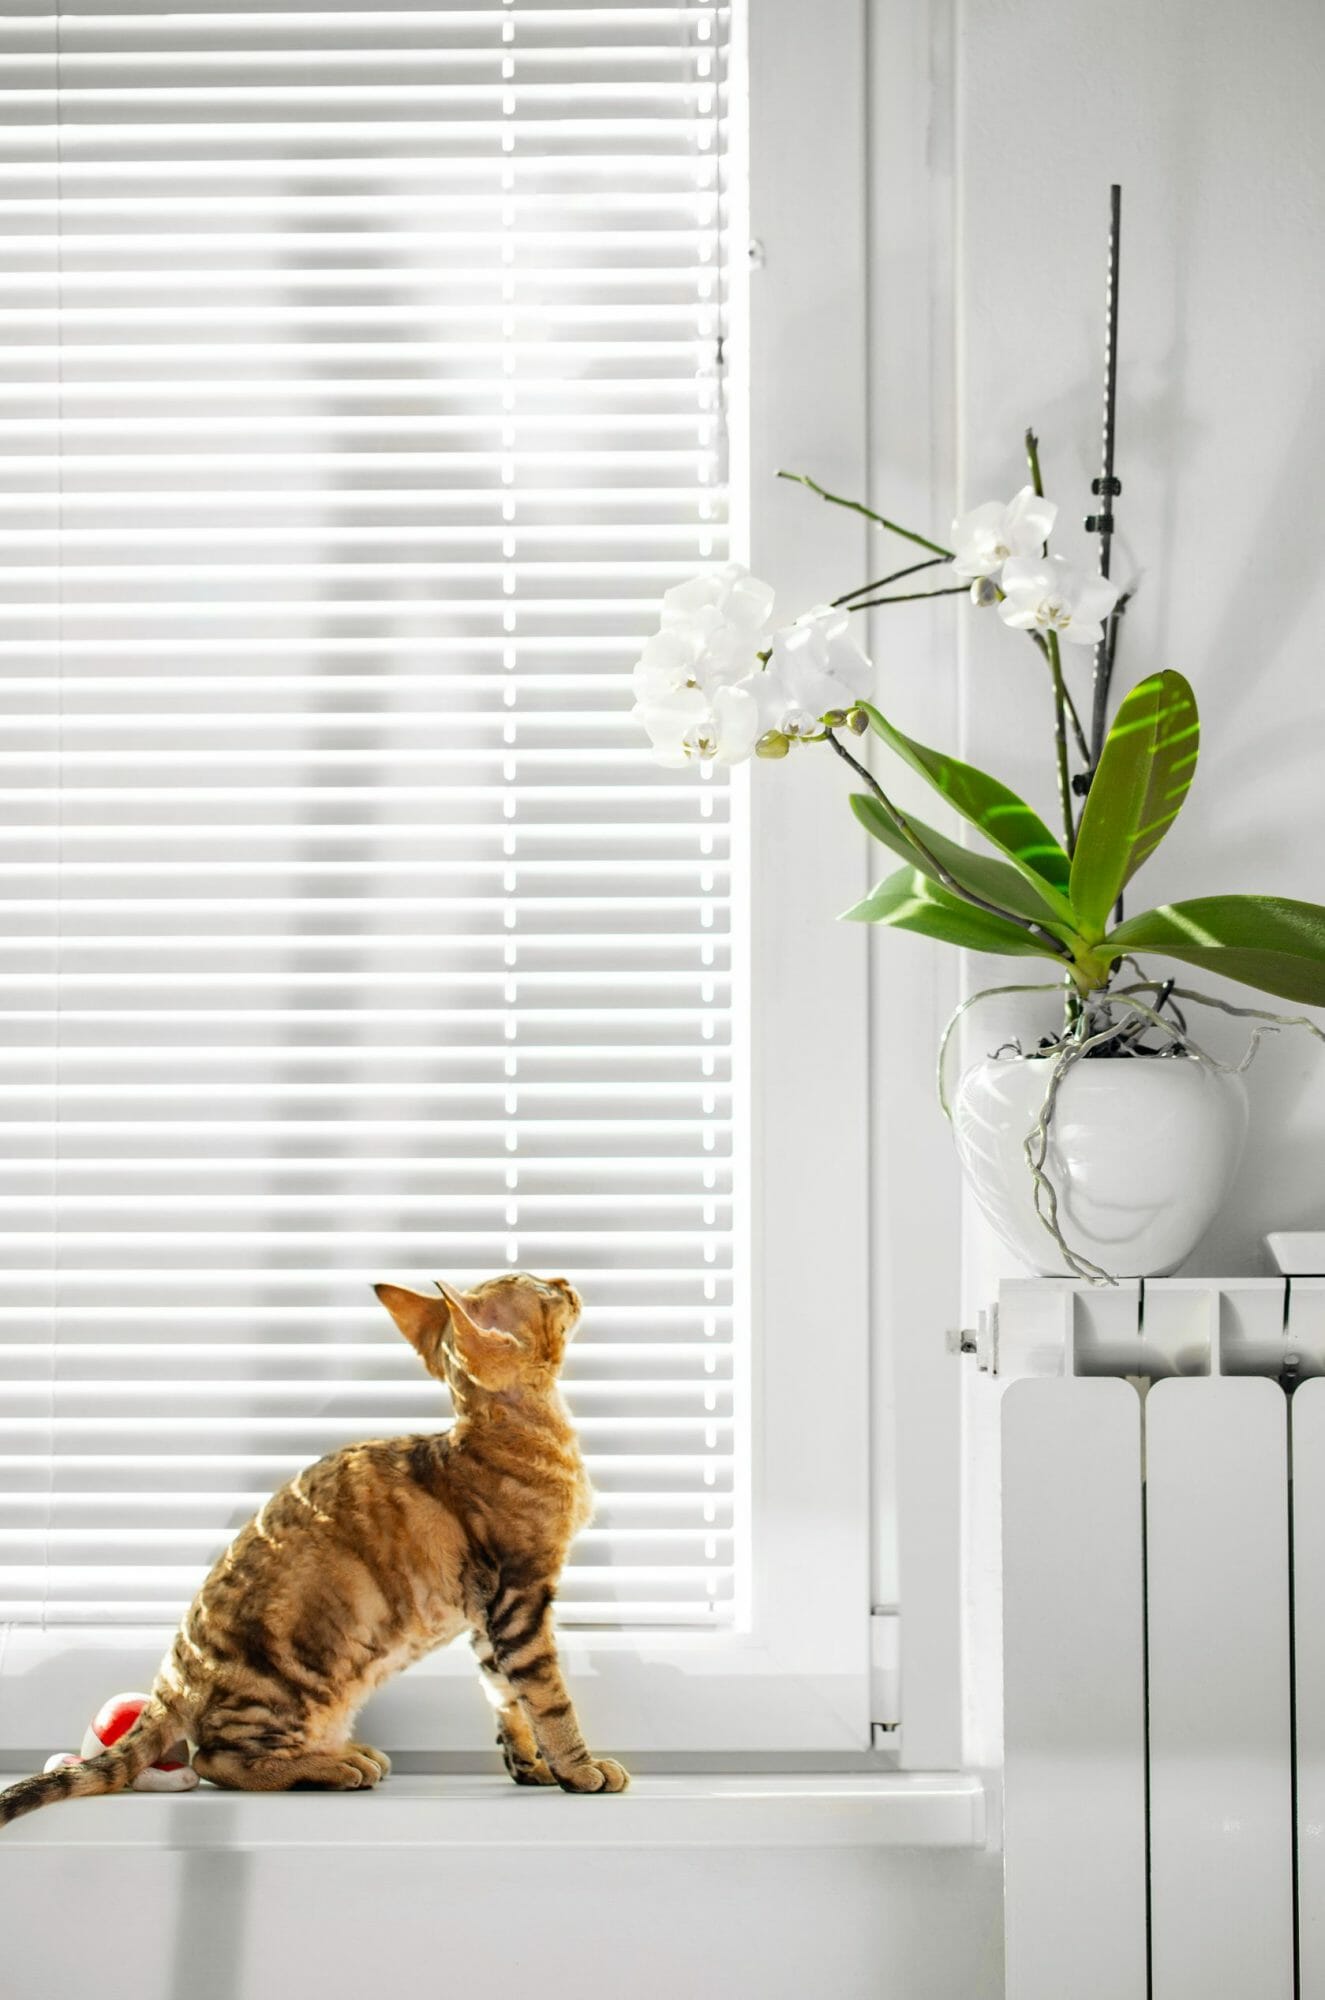 Un gato mira una planta de interior.